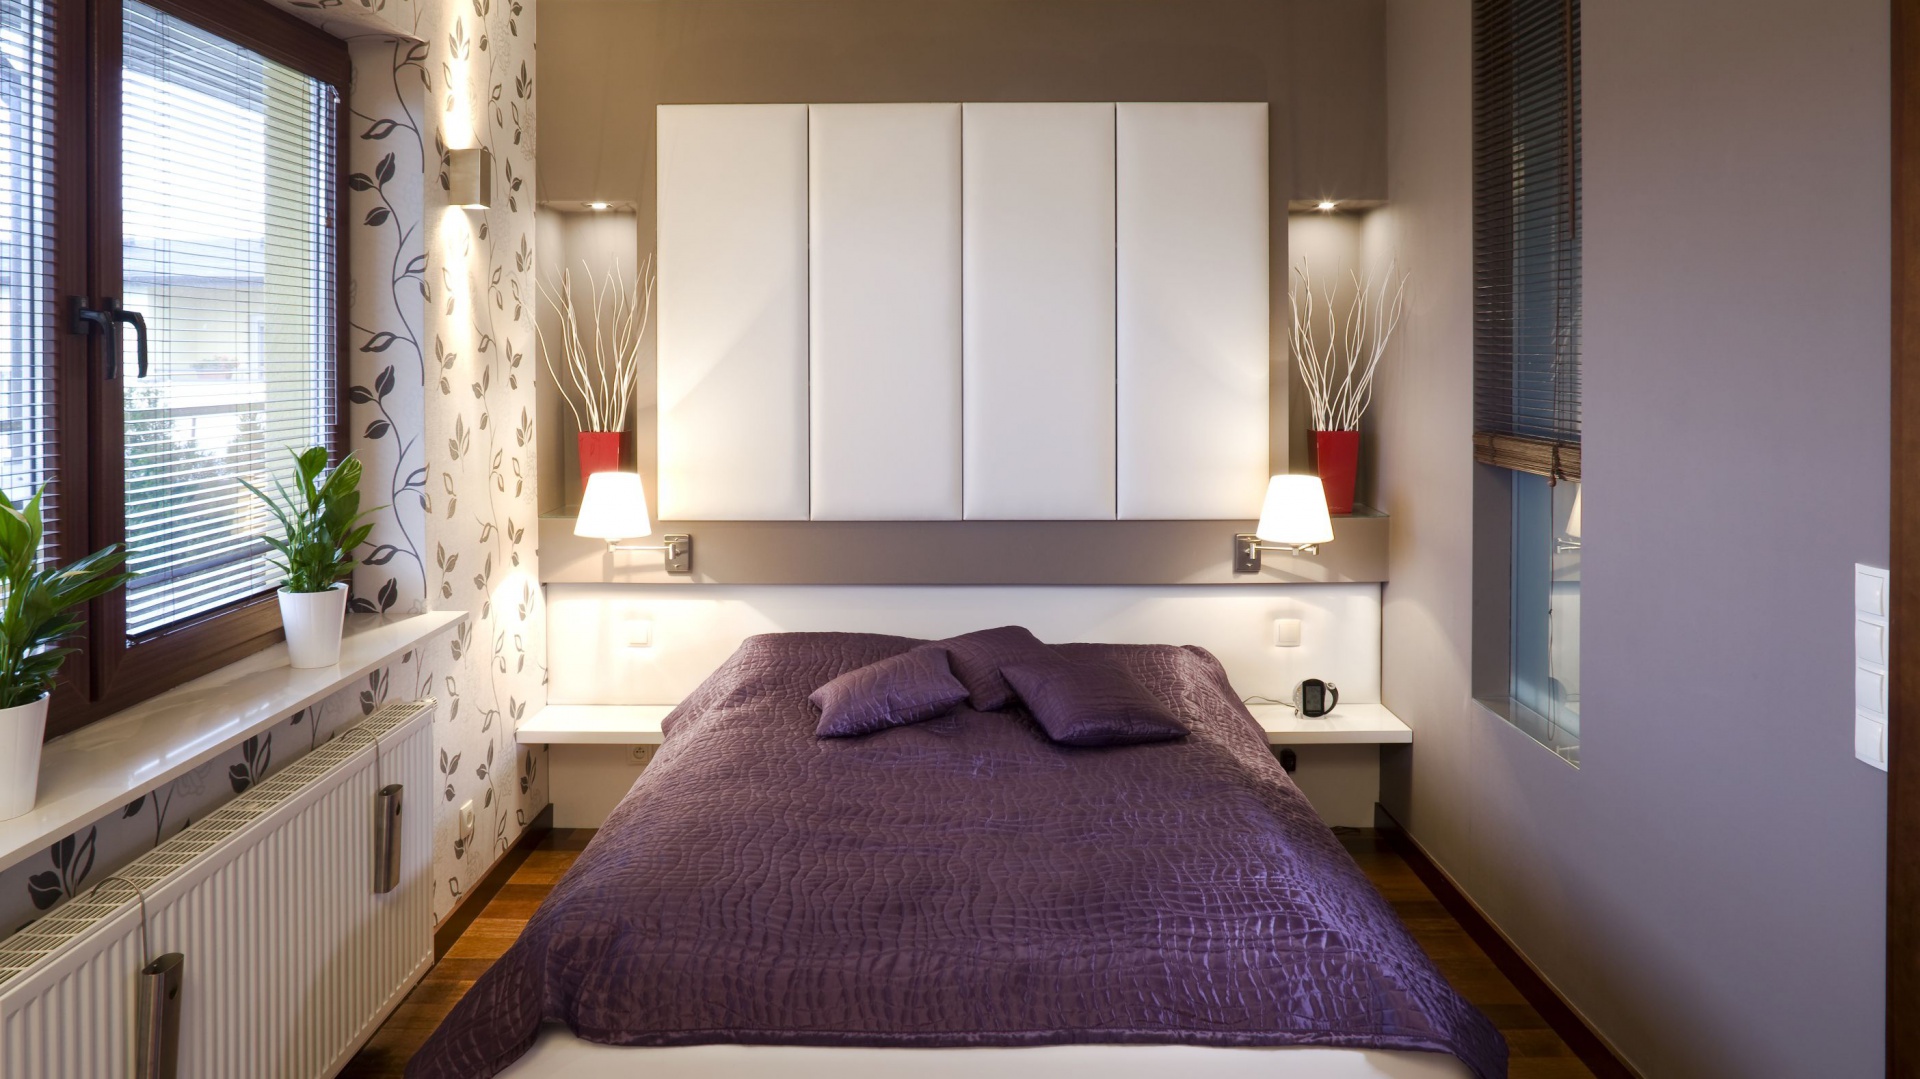 Fiolet we wnętrzu – 12 aranżacji sypialni prosto z polskich domów